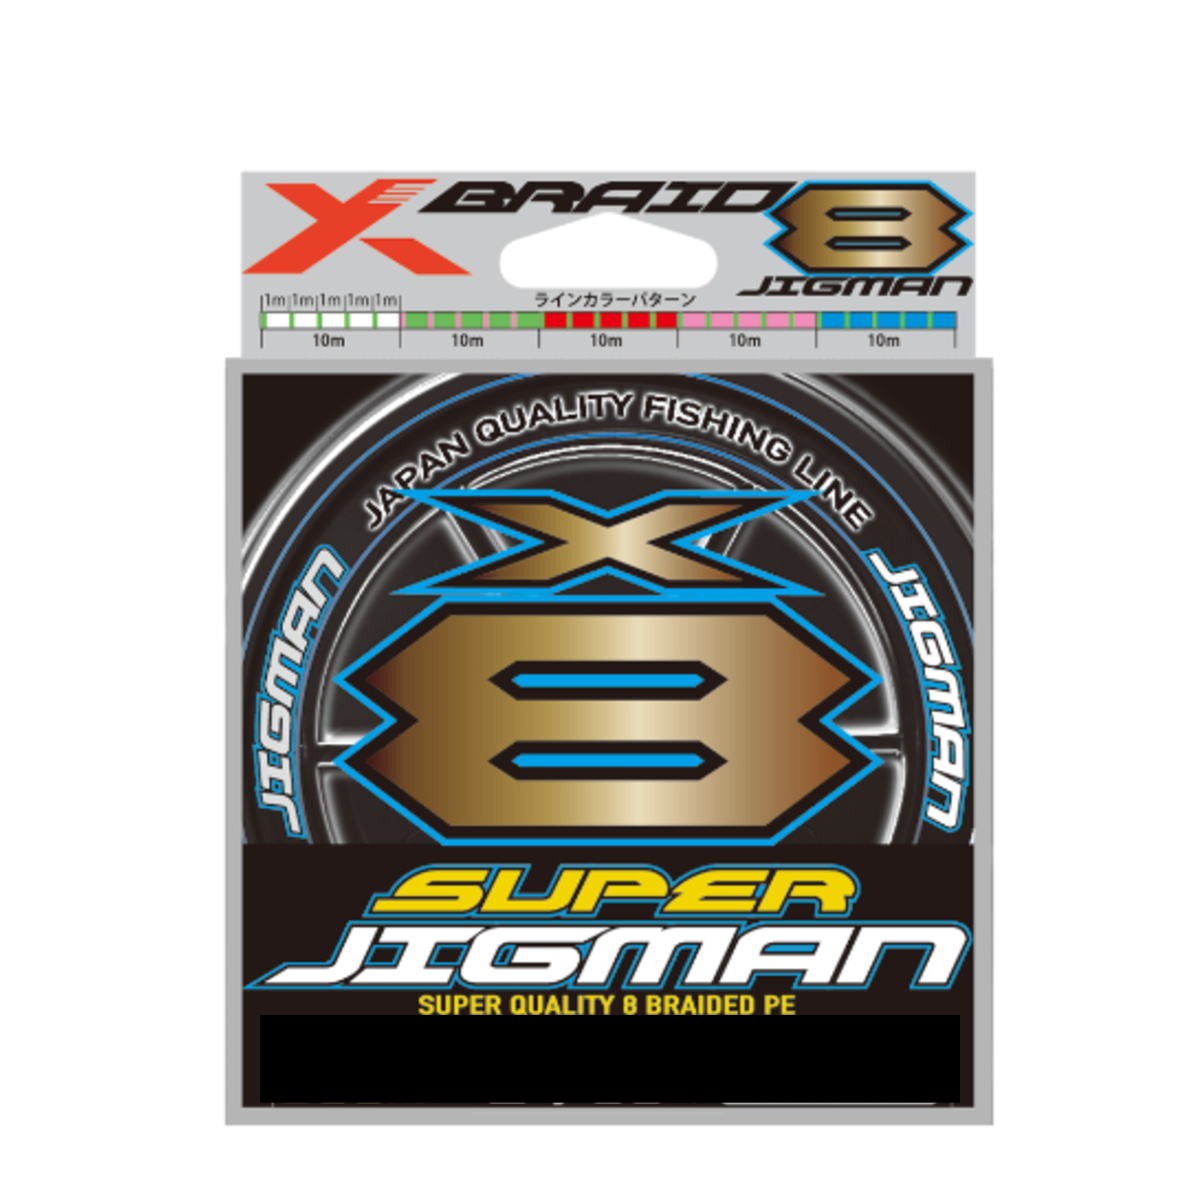 エックスブレイド スーパージグマン X8 200m 3号/50lb 釣り糸、ラインの商品画像